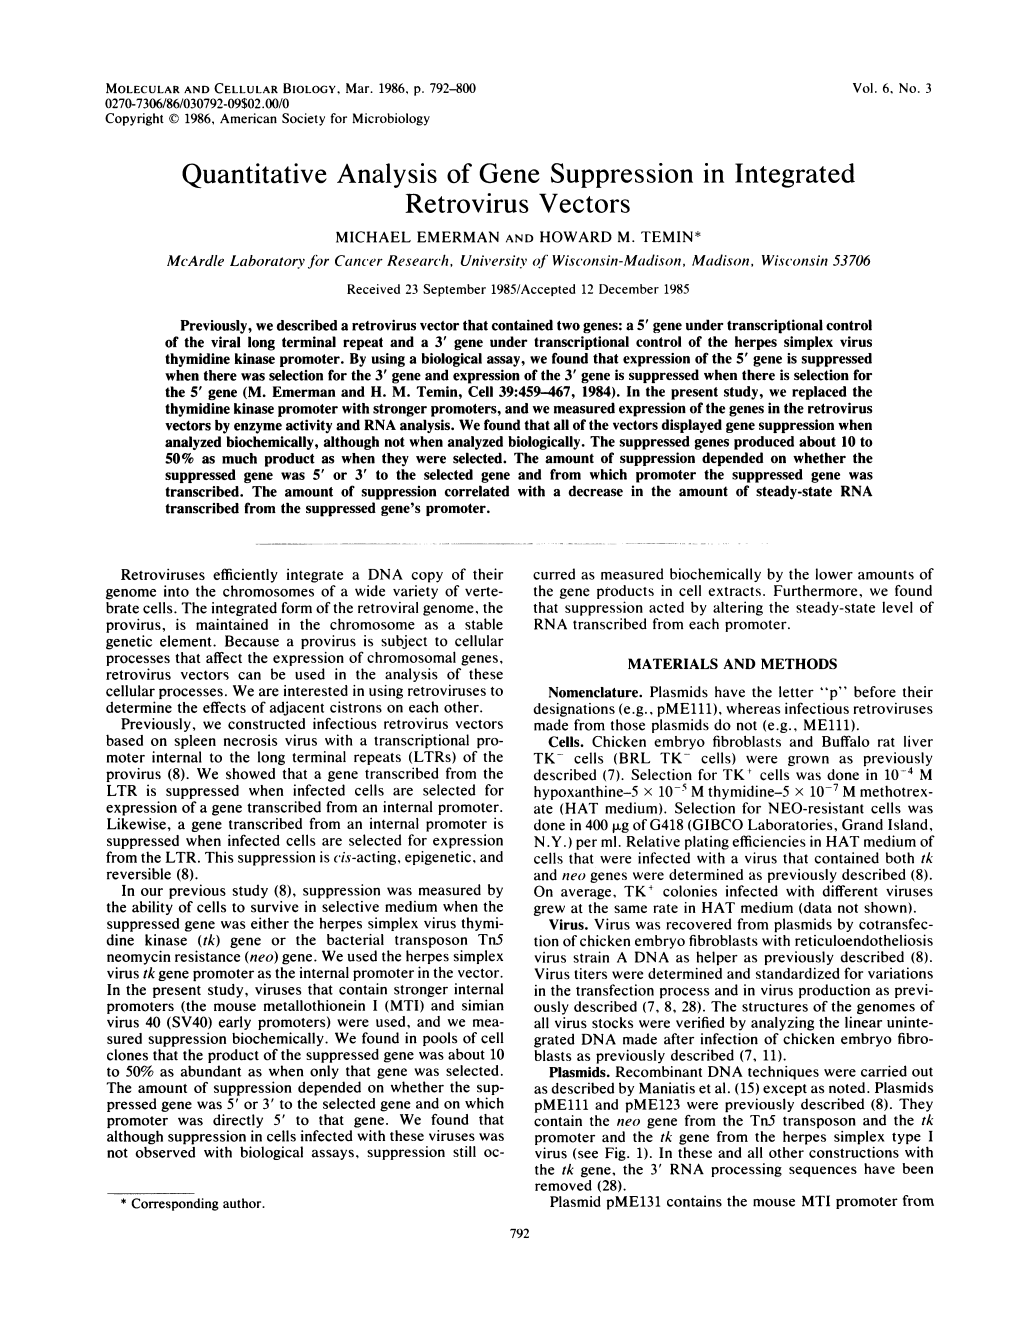 Quantitative Analysis of Gene Suppression in Integrated Retrovirus Vectors